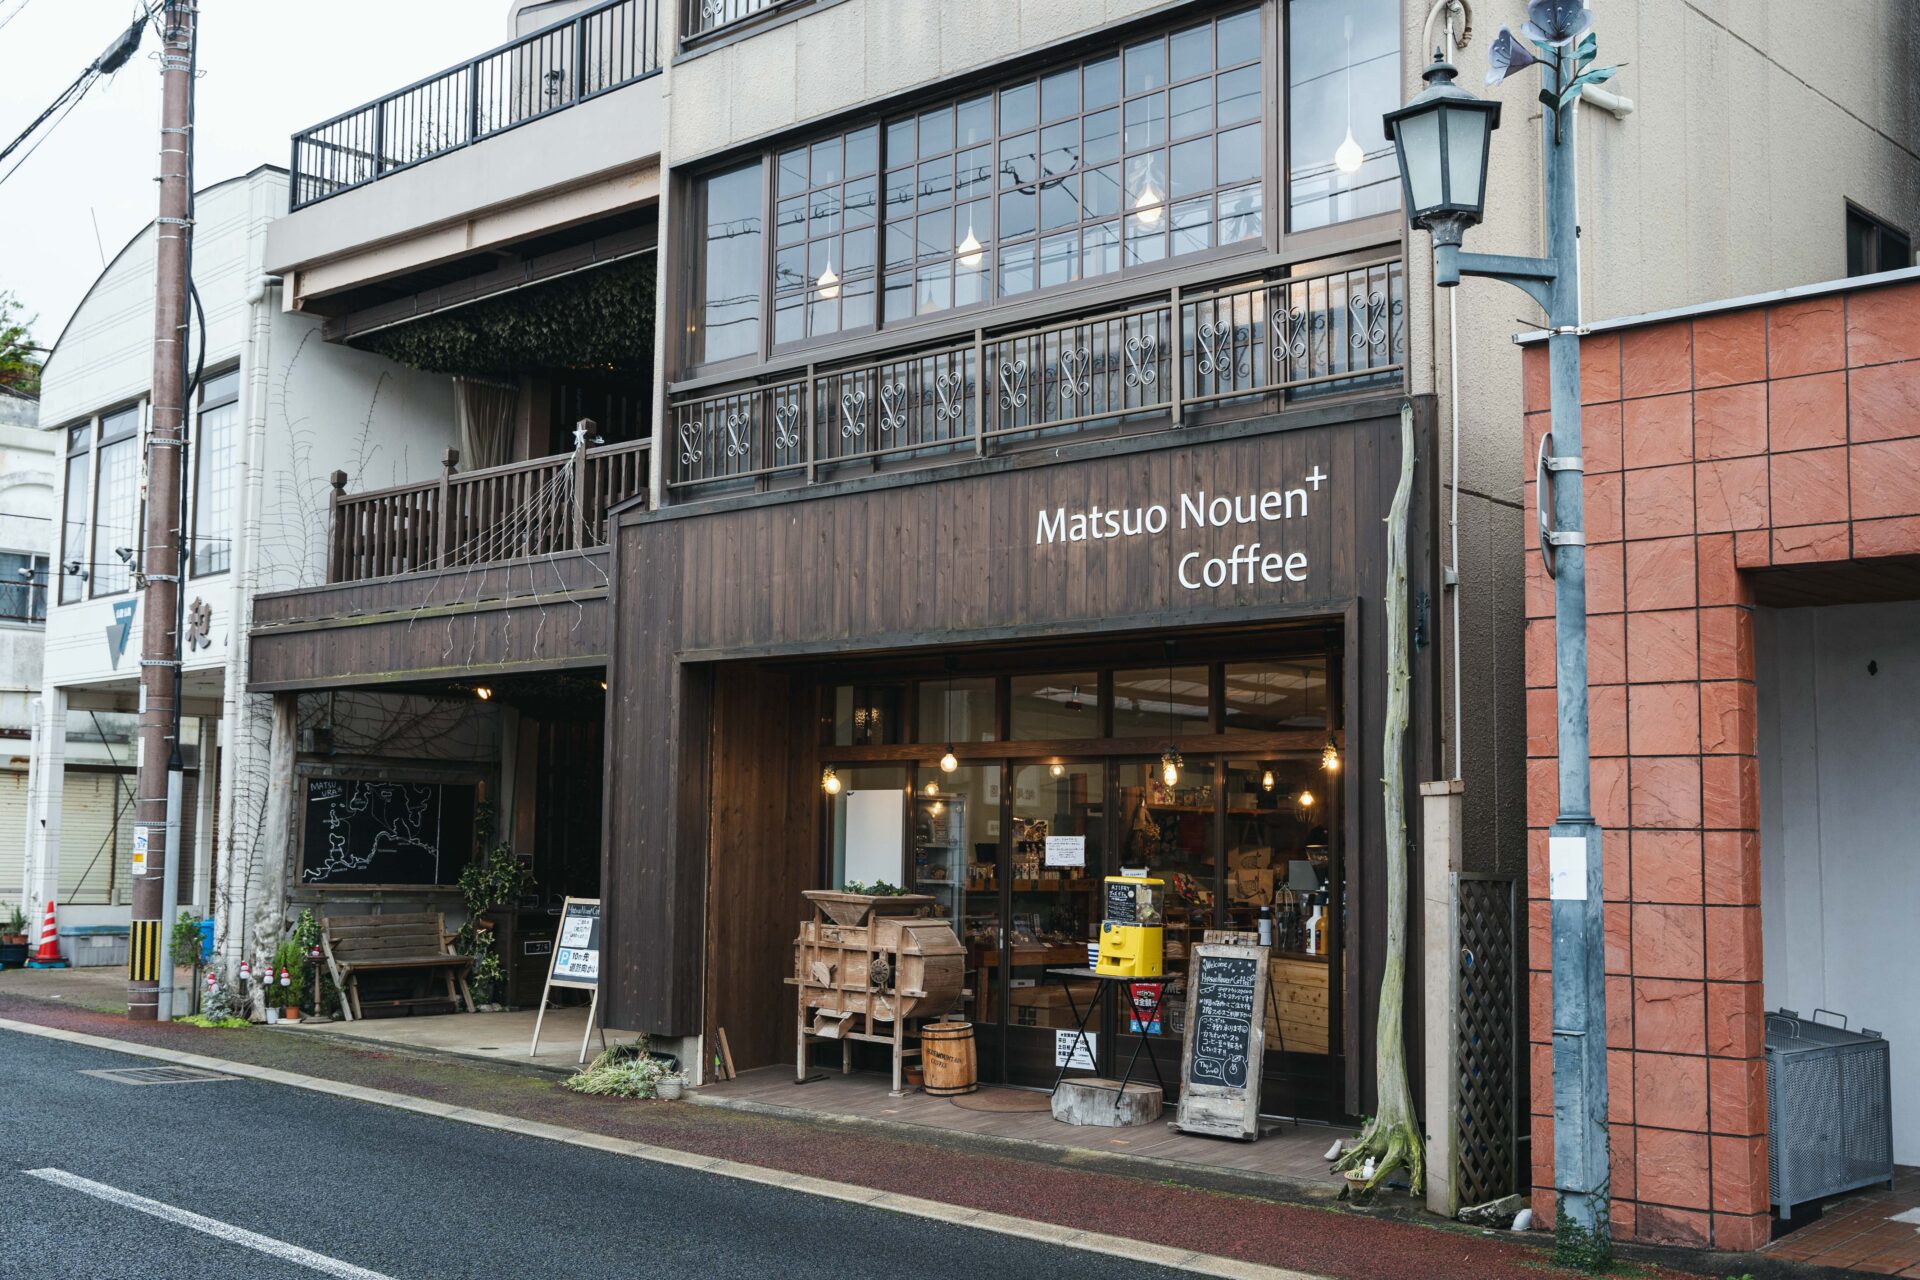 目指すは創業100年。自身と周囲を豊かにしながら、幸せを感じるいとなみを。『松尾農園／Matsuo Nouen + Coffee』